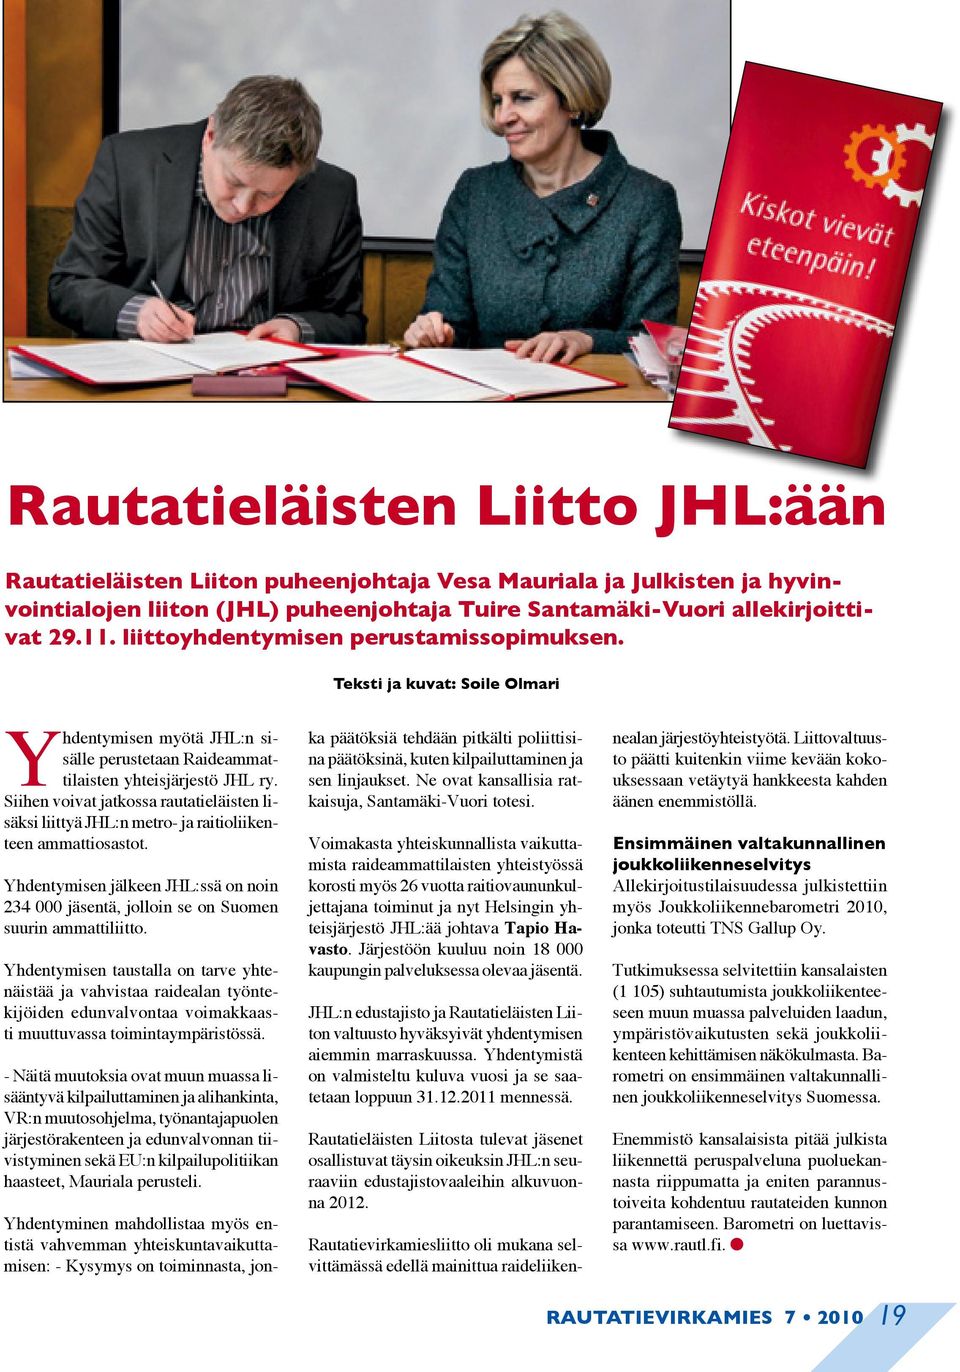 Siihen voivat jatkossa rautatieläisten lisäksi liittyä JHL:n metro- ja raitioliikenteen ammattiosastot. Yhdentymisen jälkeen JHL:ssä on noin 234 000 jäsentä, jolloin se on Suomen suurin ammattiliitto.